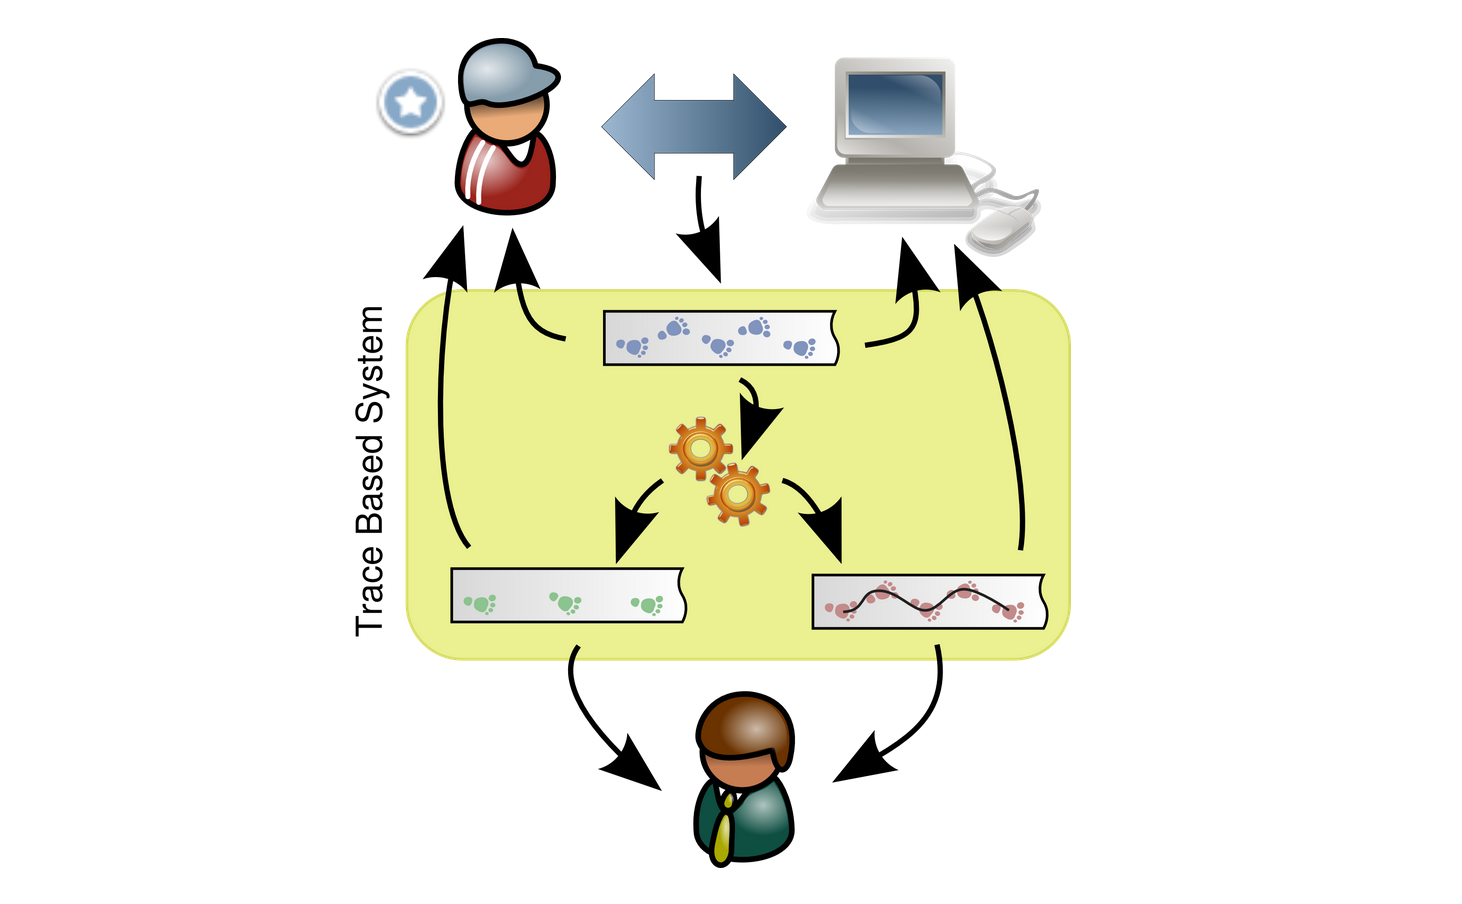 Illustration for software 